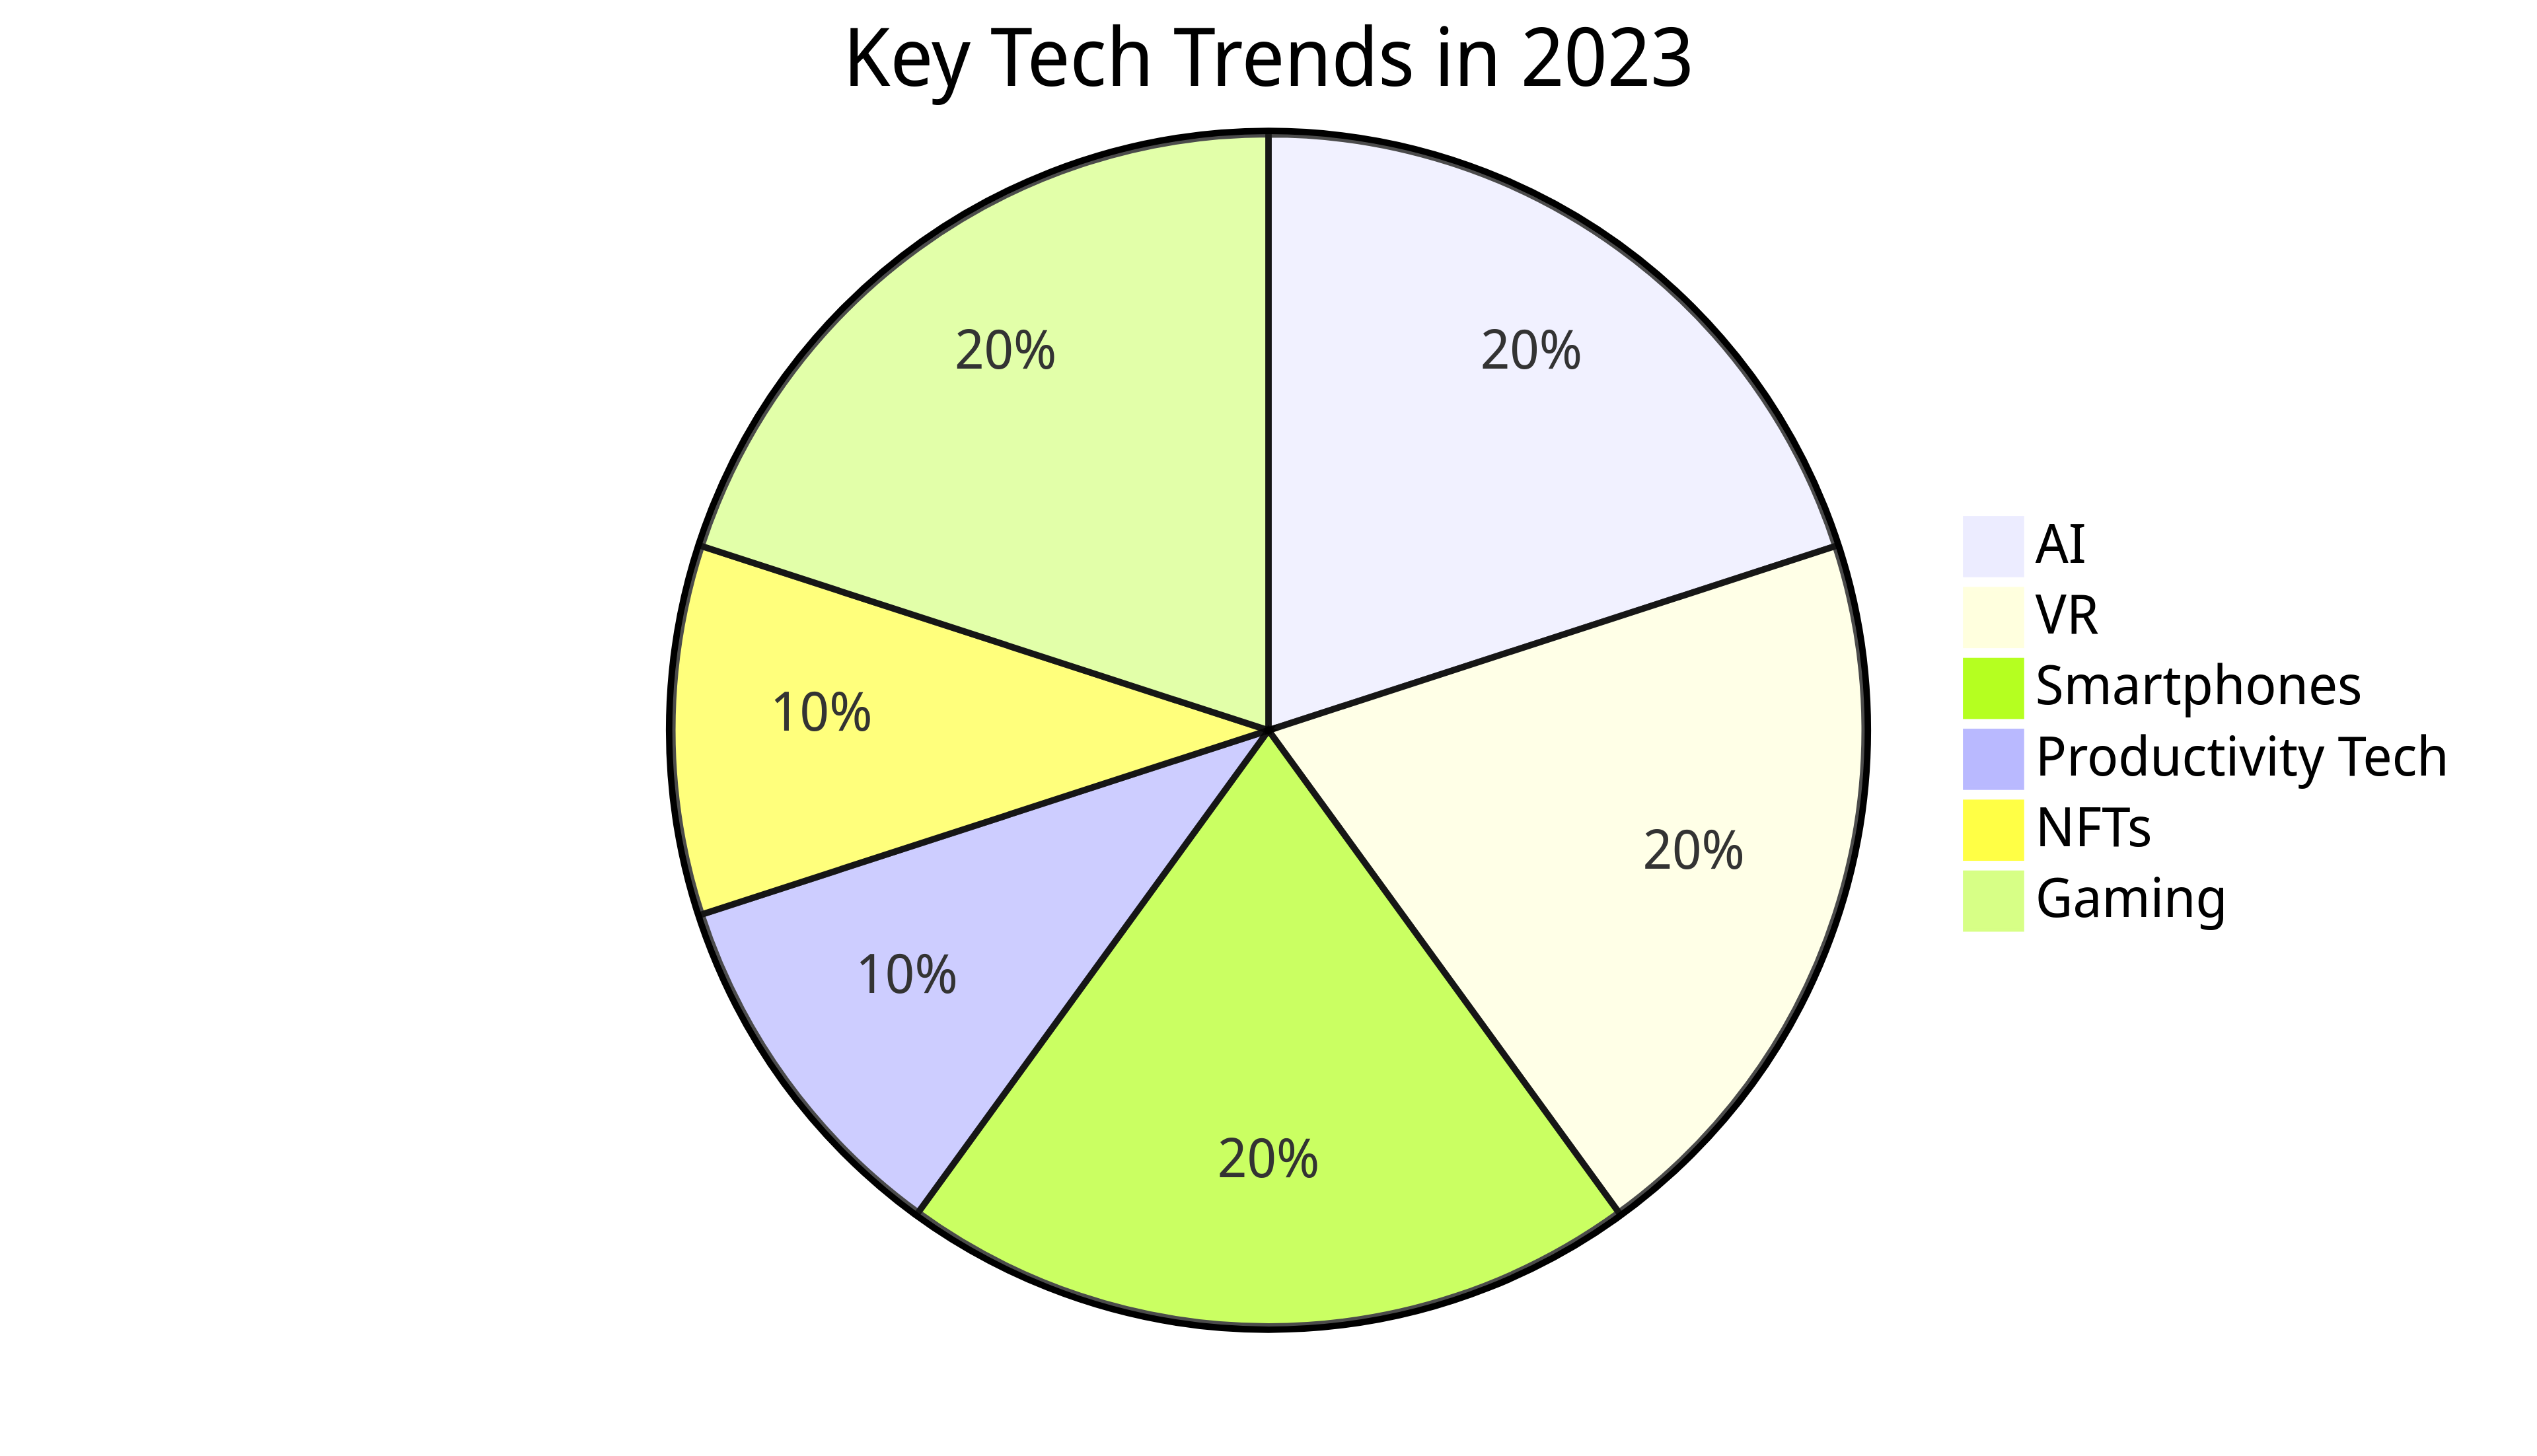 Key Tech Trends in 2023